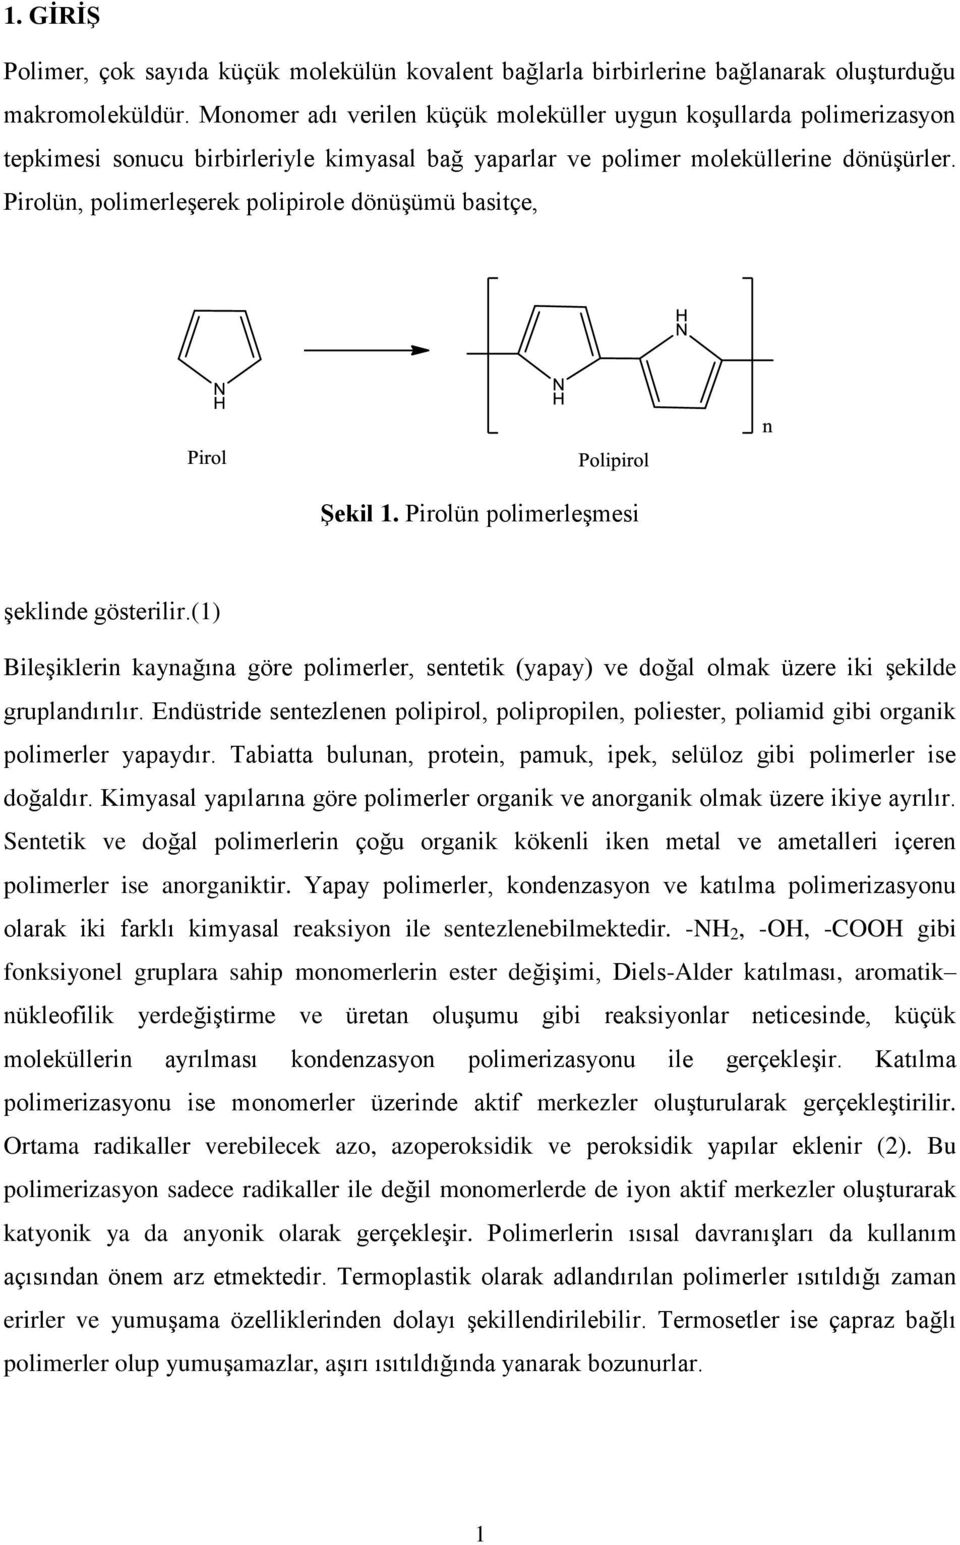 Pirolün, polimerleşerek polipirole dönüşümü basitçe, Şekil 1. Pirolün polimerleşmesi şeklinde gösterilir.